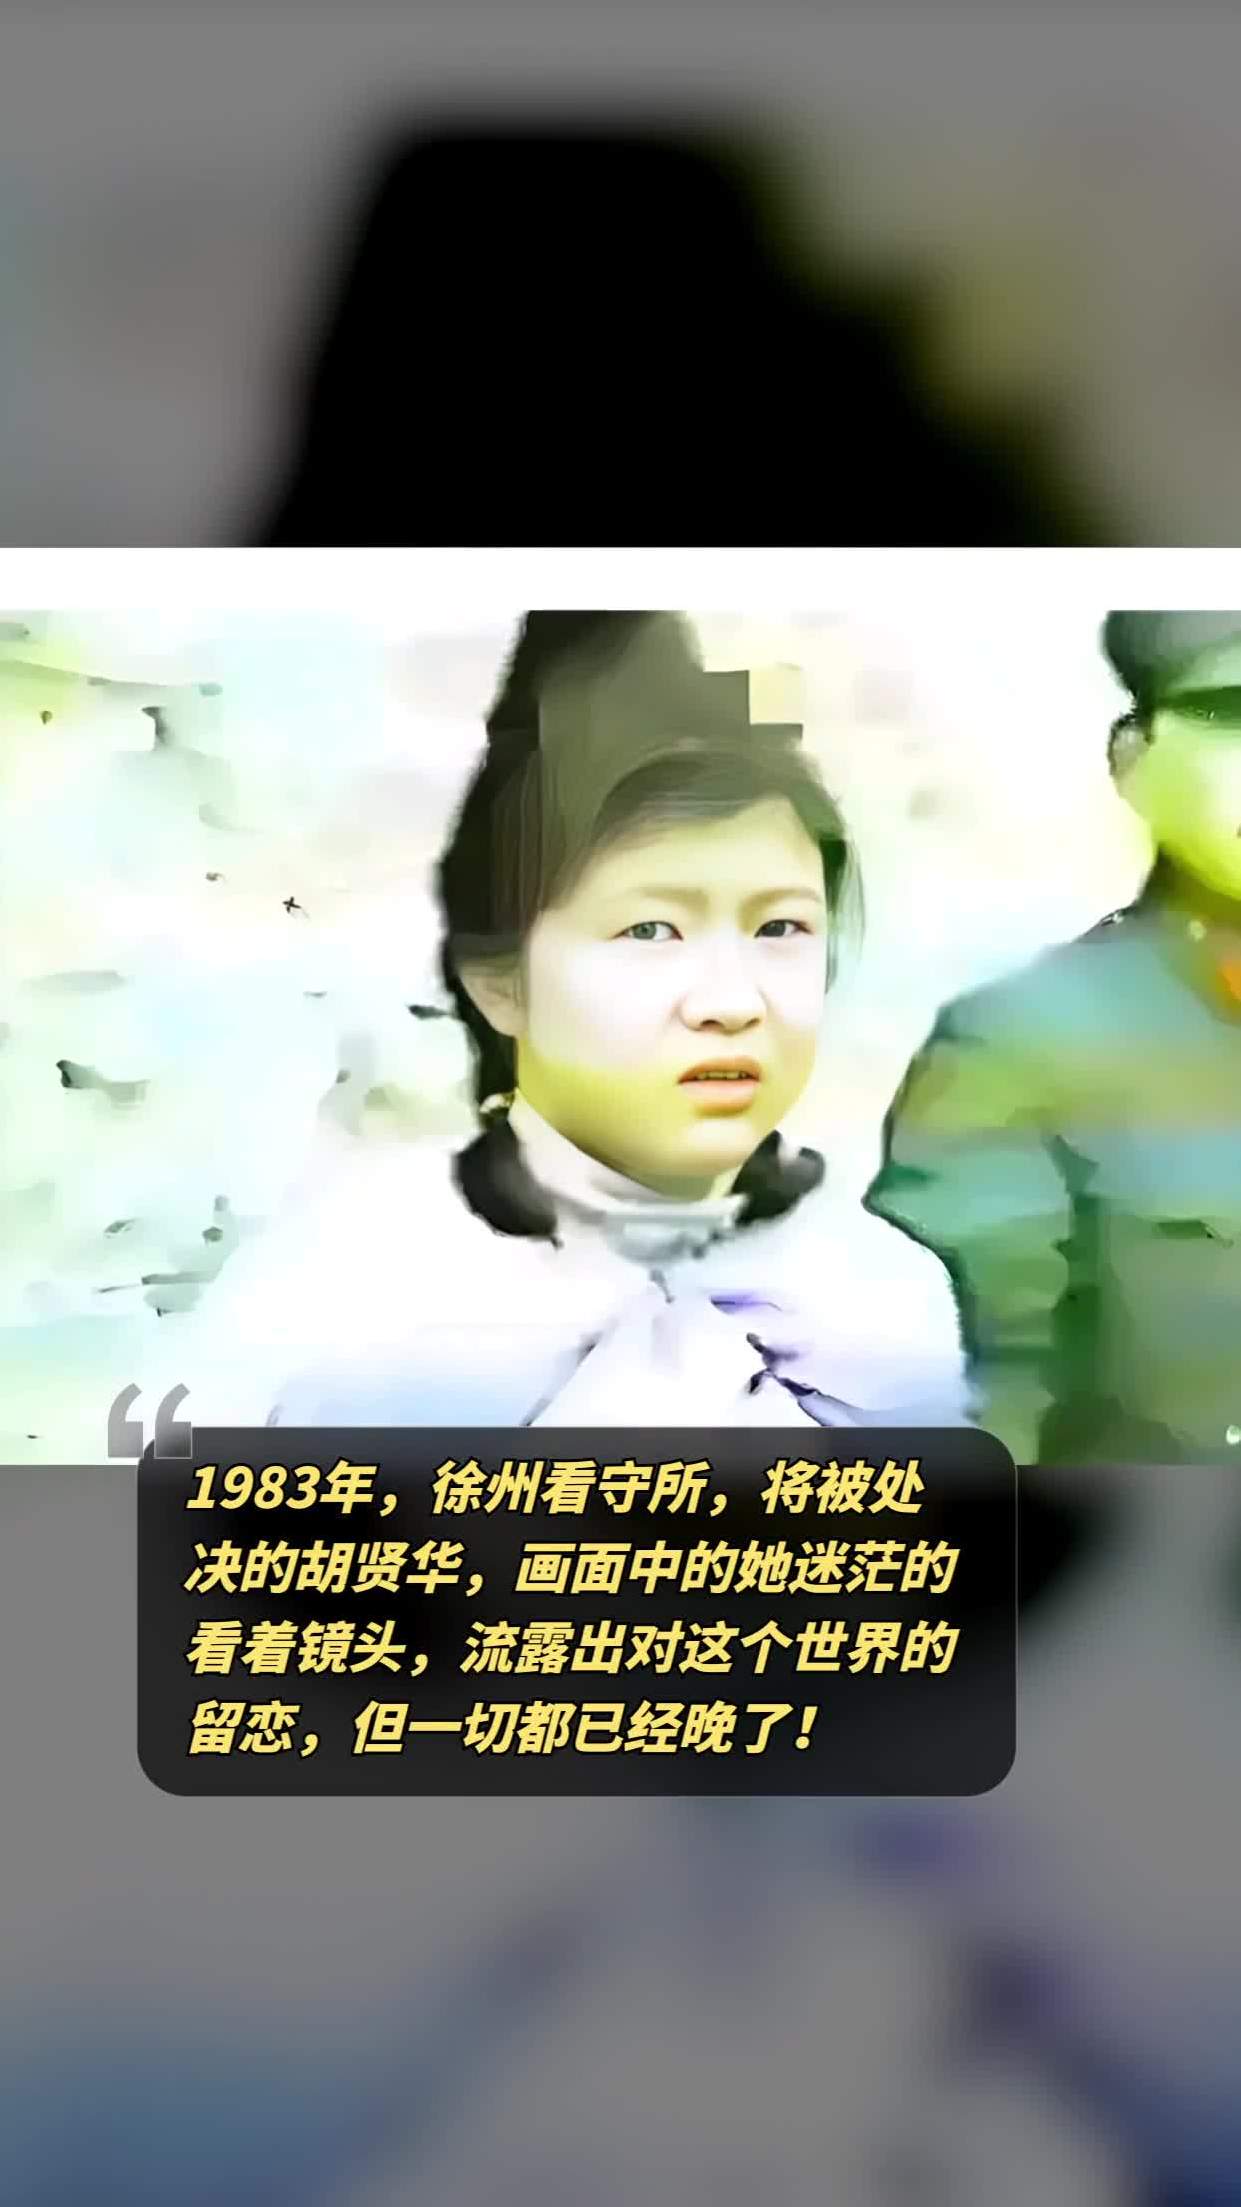 1983年,徐州看守所,将被处决的胡贤华,画面中的她迷茫的看着镜头,流露